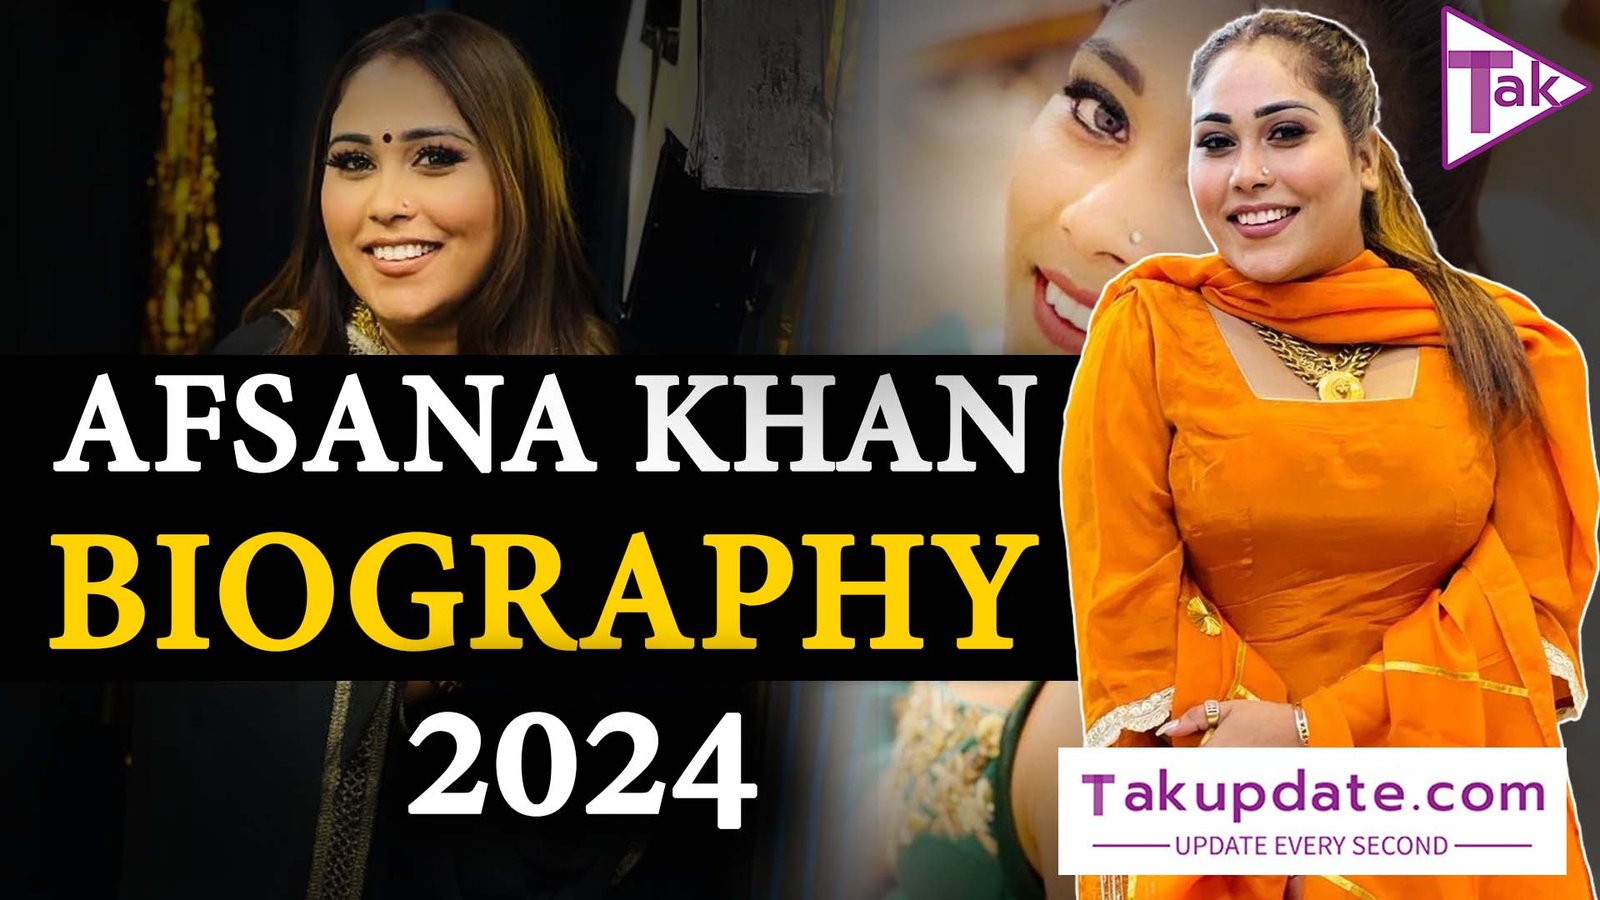 Afsana Khan Biography 2024: जानिए पंजाबी गायिका अफसाना खान के बारे में जिन्होंने पंजाबी म्यूजिक इंडस्ट्री में रचा इतिहास